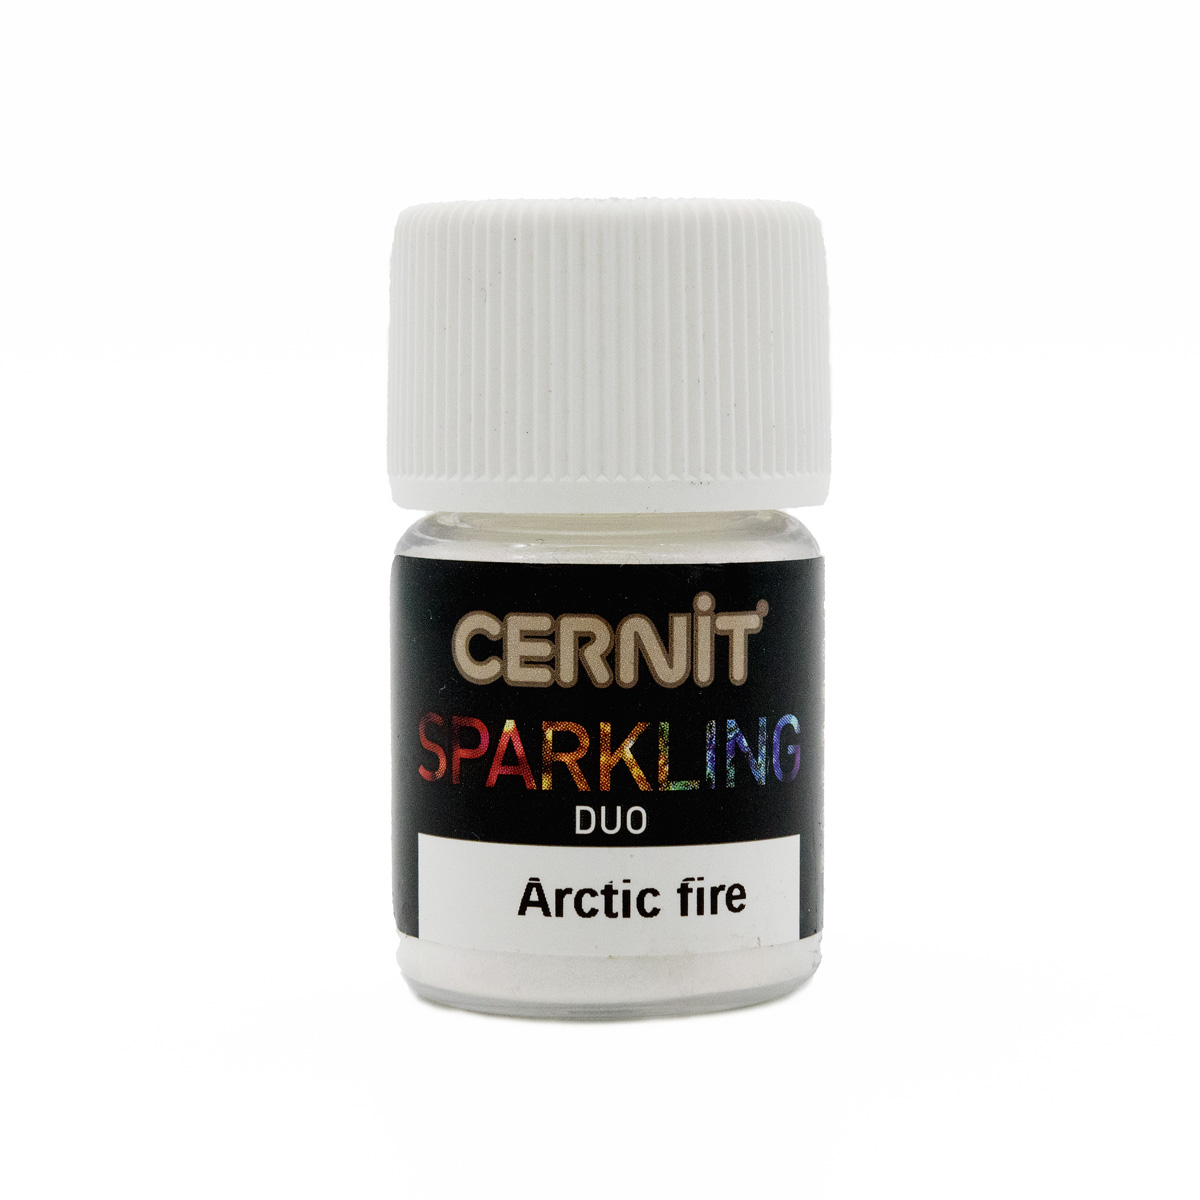 фото Ce6130002 мика-порошок (слюда) cernit duo sparkling powder арктический огонь, 2 г